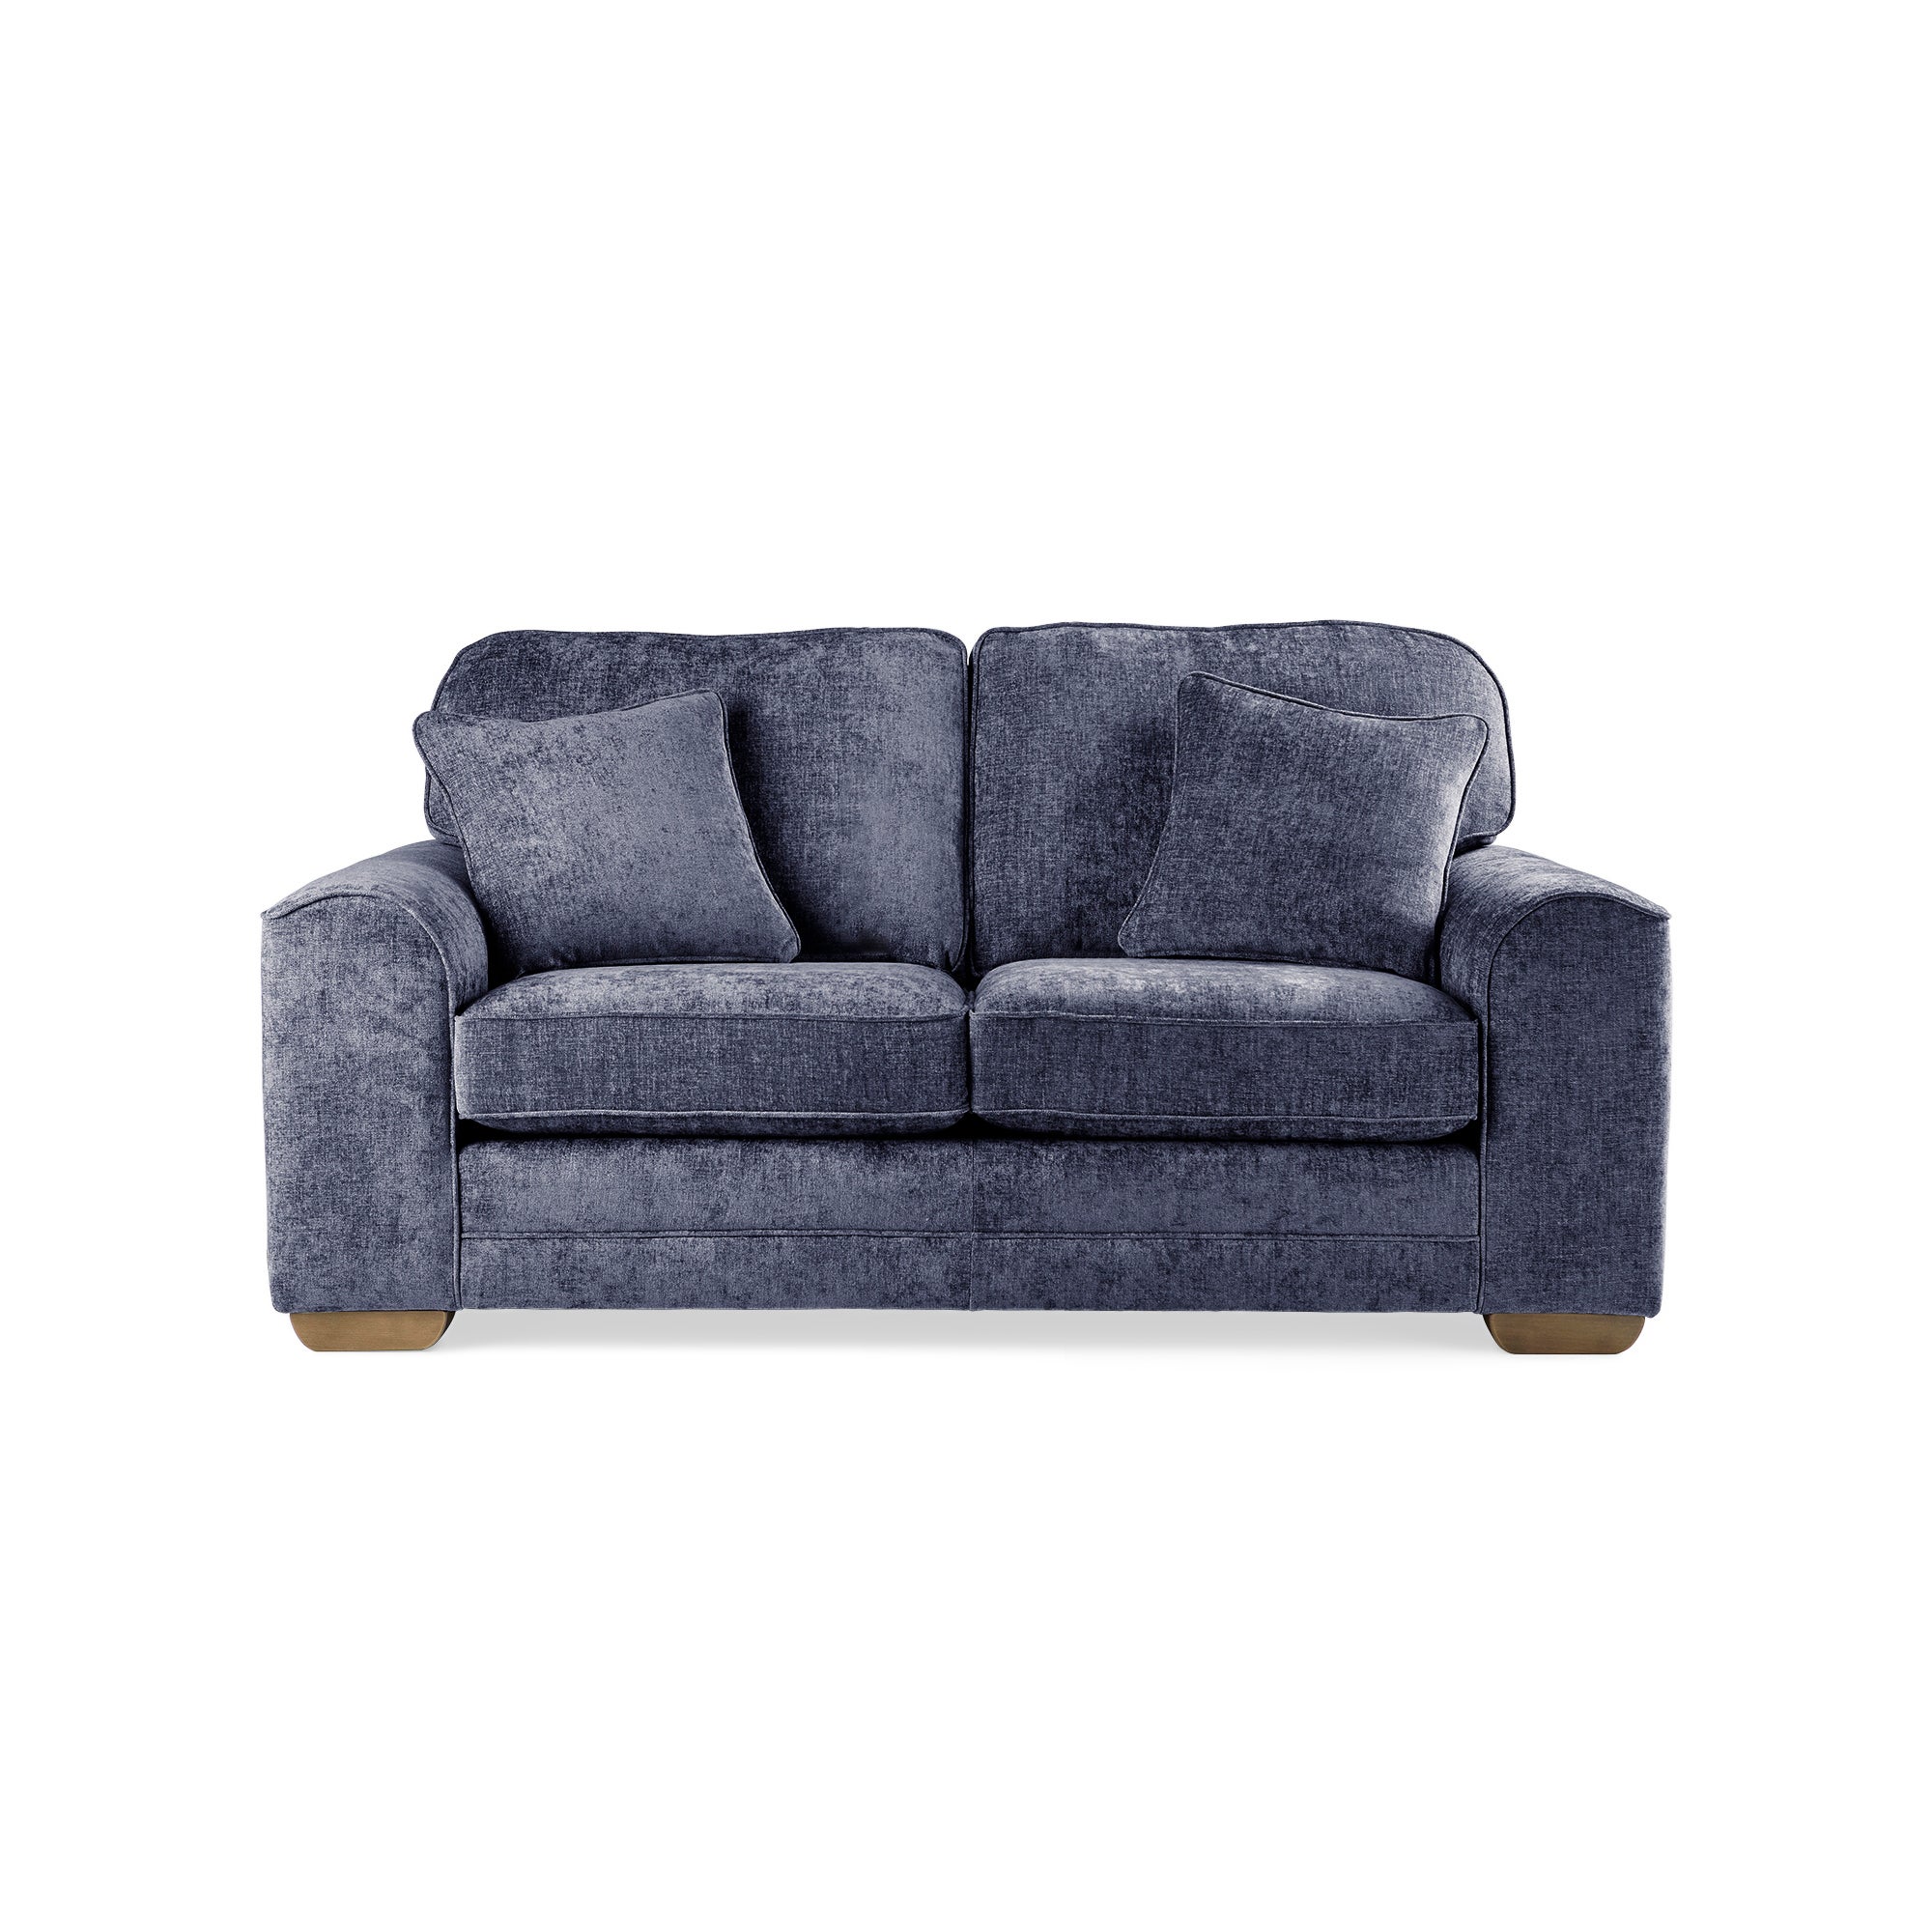 Morello 2 Seater Sofa Navy Blue